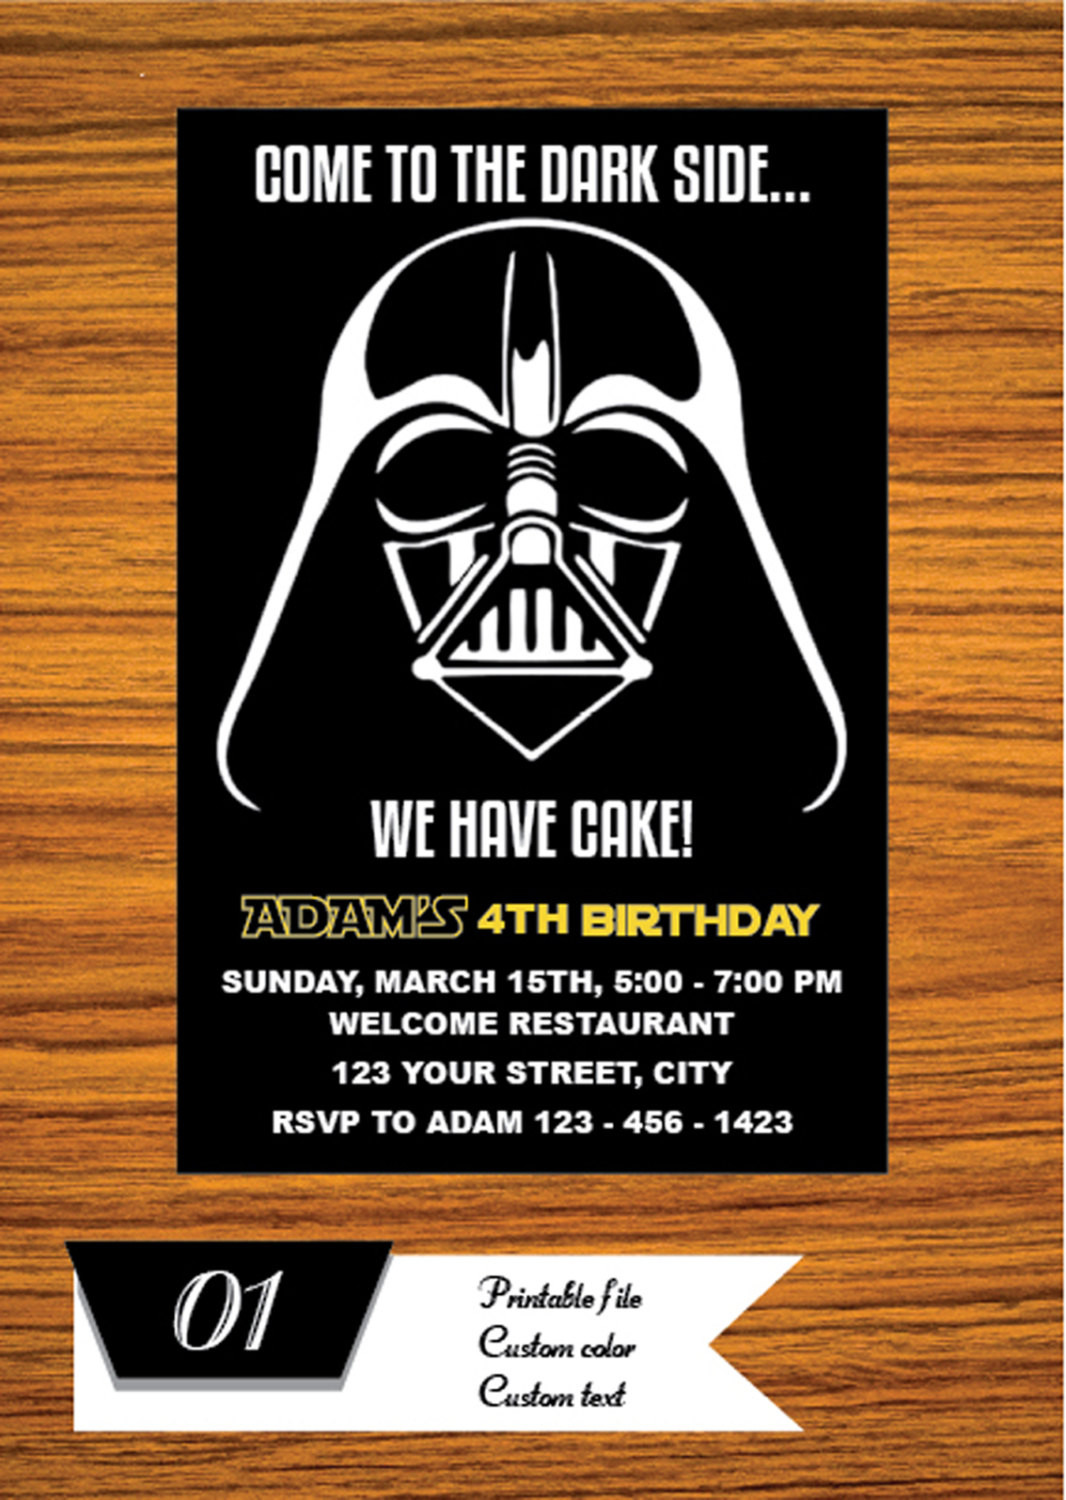 Best ideas about Star Wars Birthday Invitations
. Save or Pin Star Wars Invitation Star Wars Party Invitation Star Wars Now.